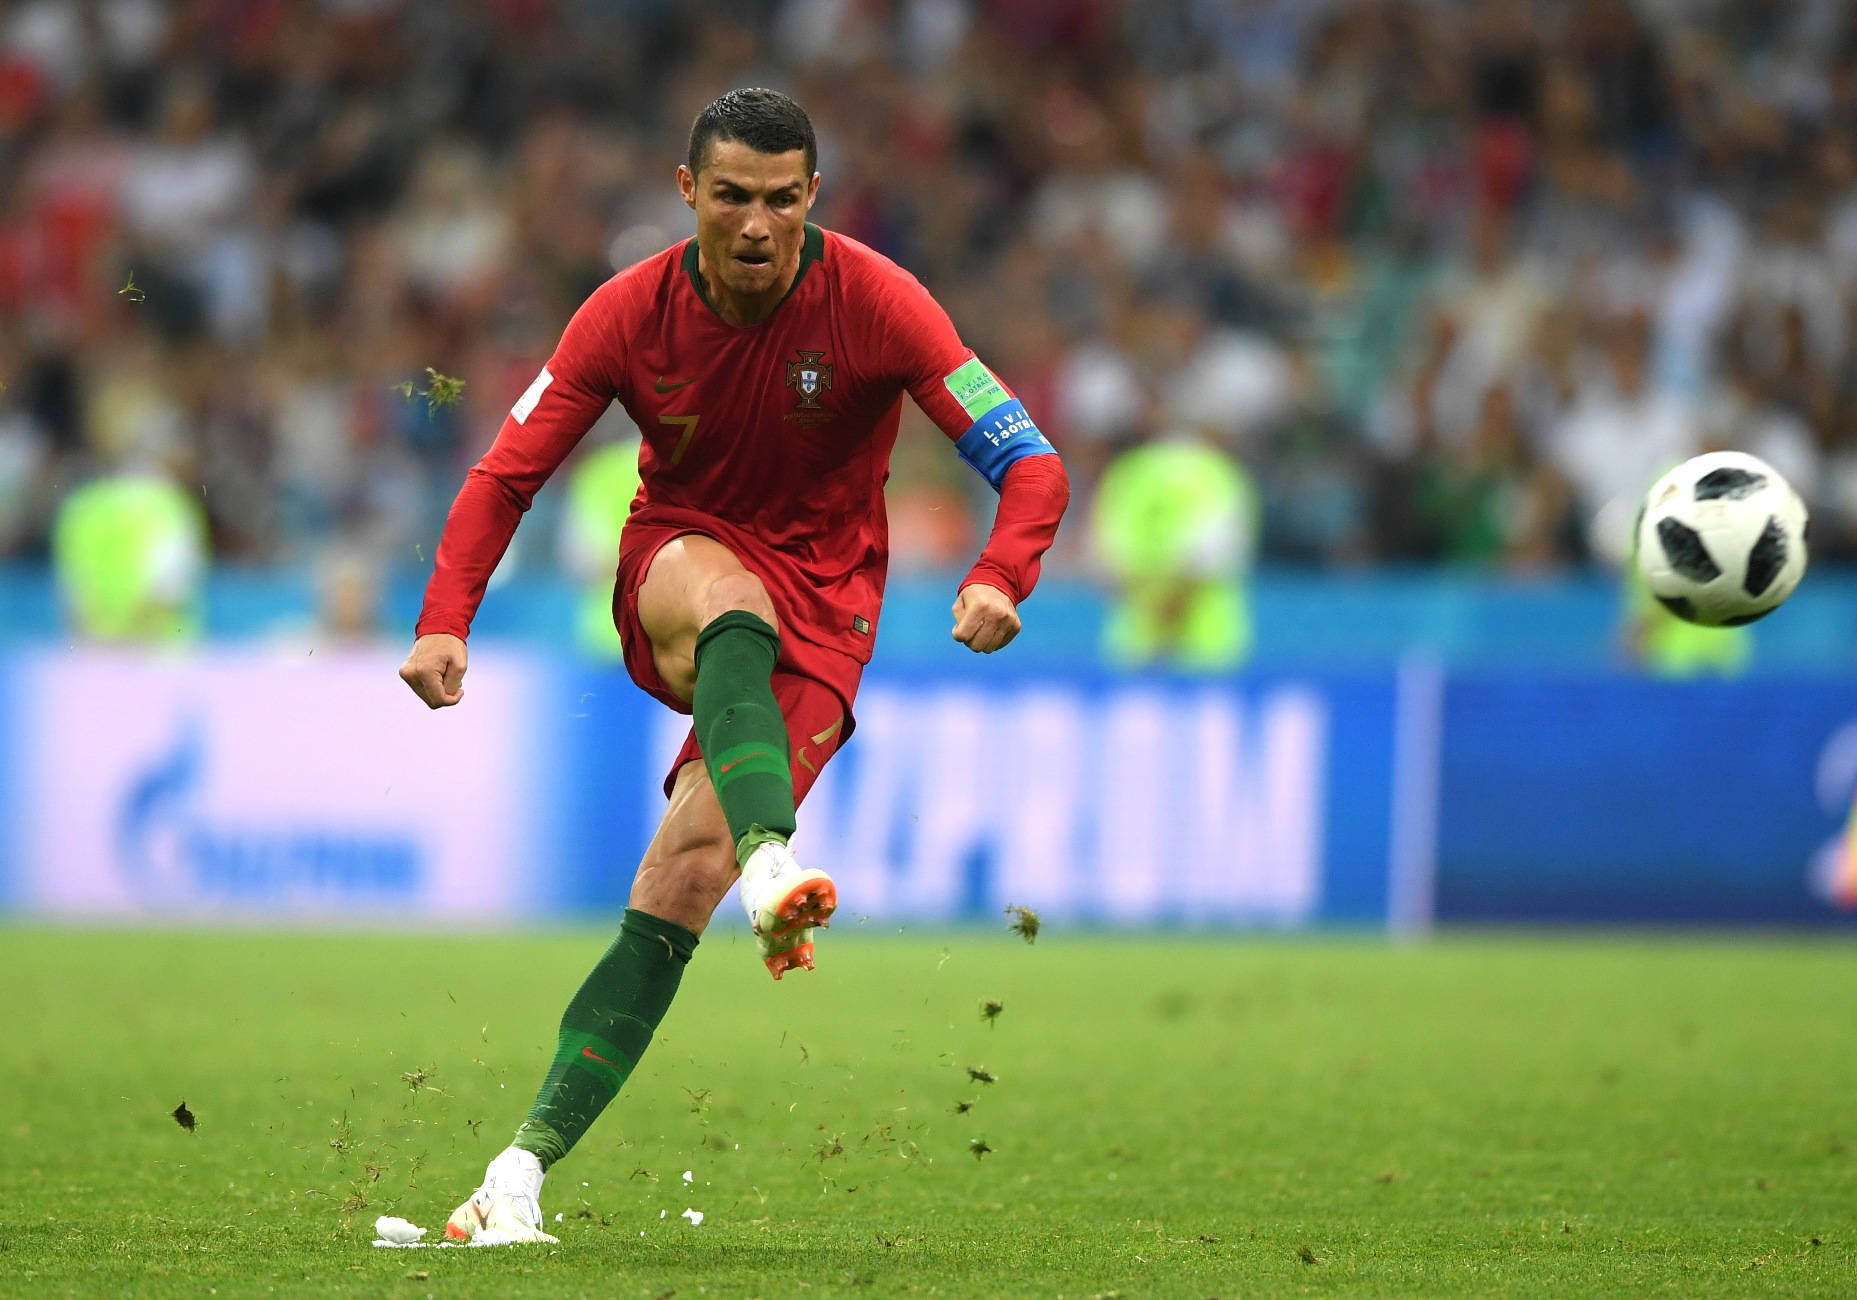 Cristiano Ronaldo sends an incredible kick in the air Wallpaper